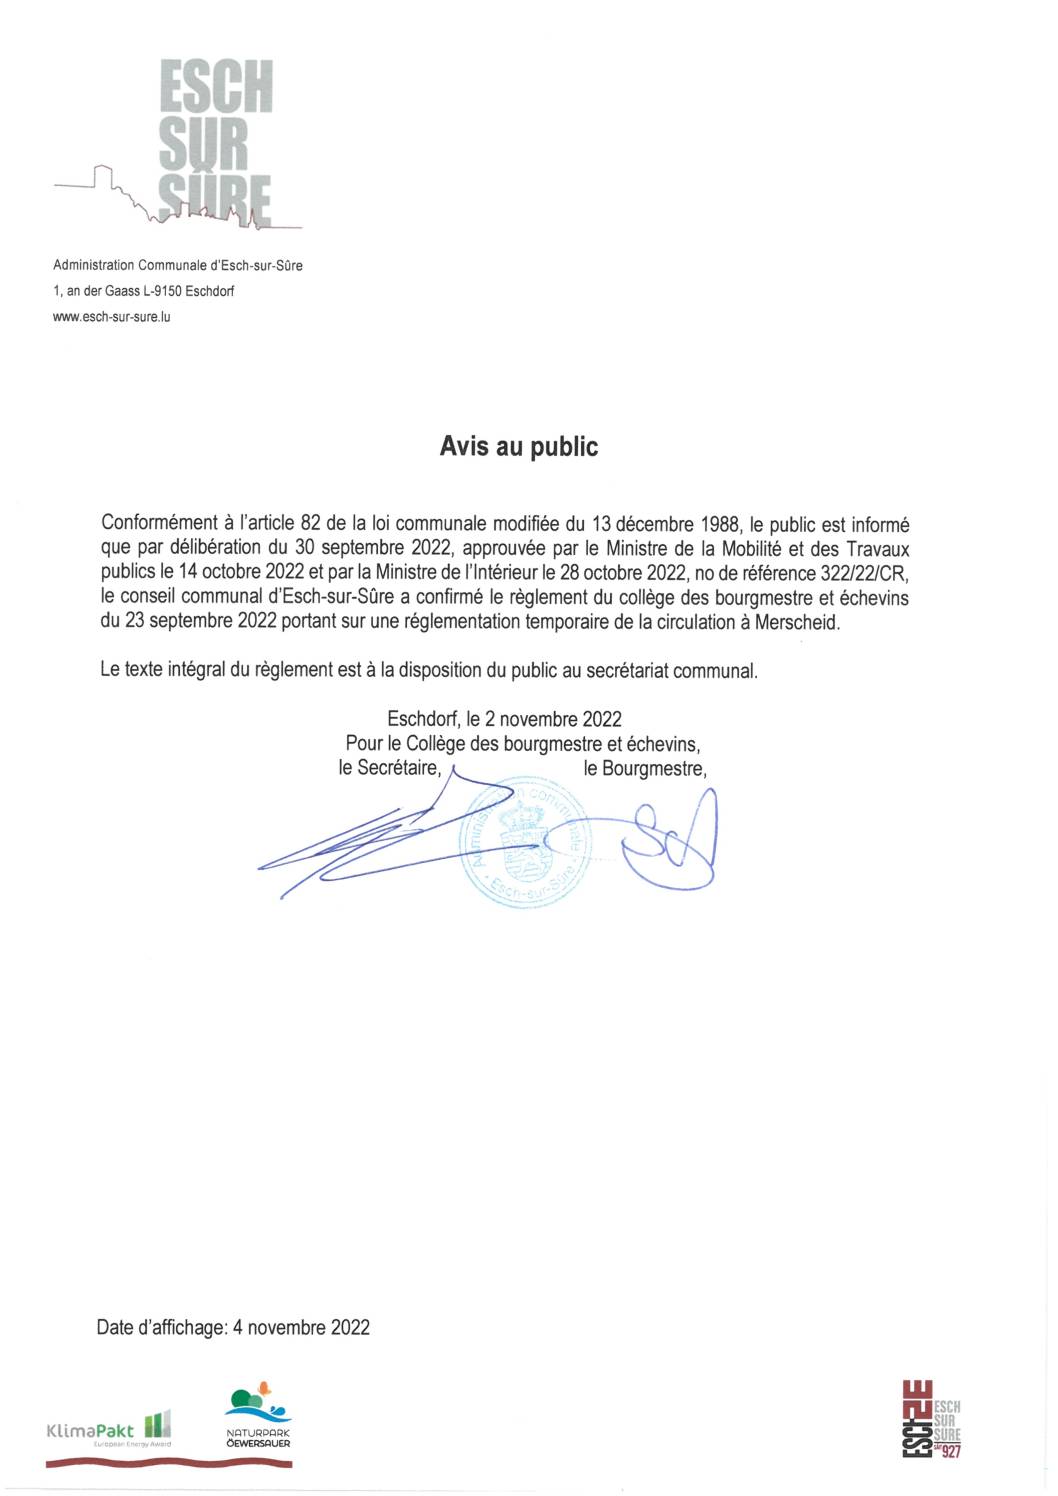 2022.11.04_Avis - Confirmation du règlement du collège des bourgmestre et échevins du 23.09.2022